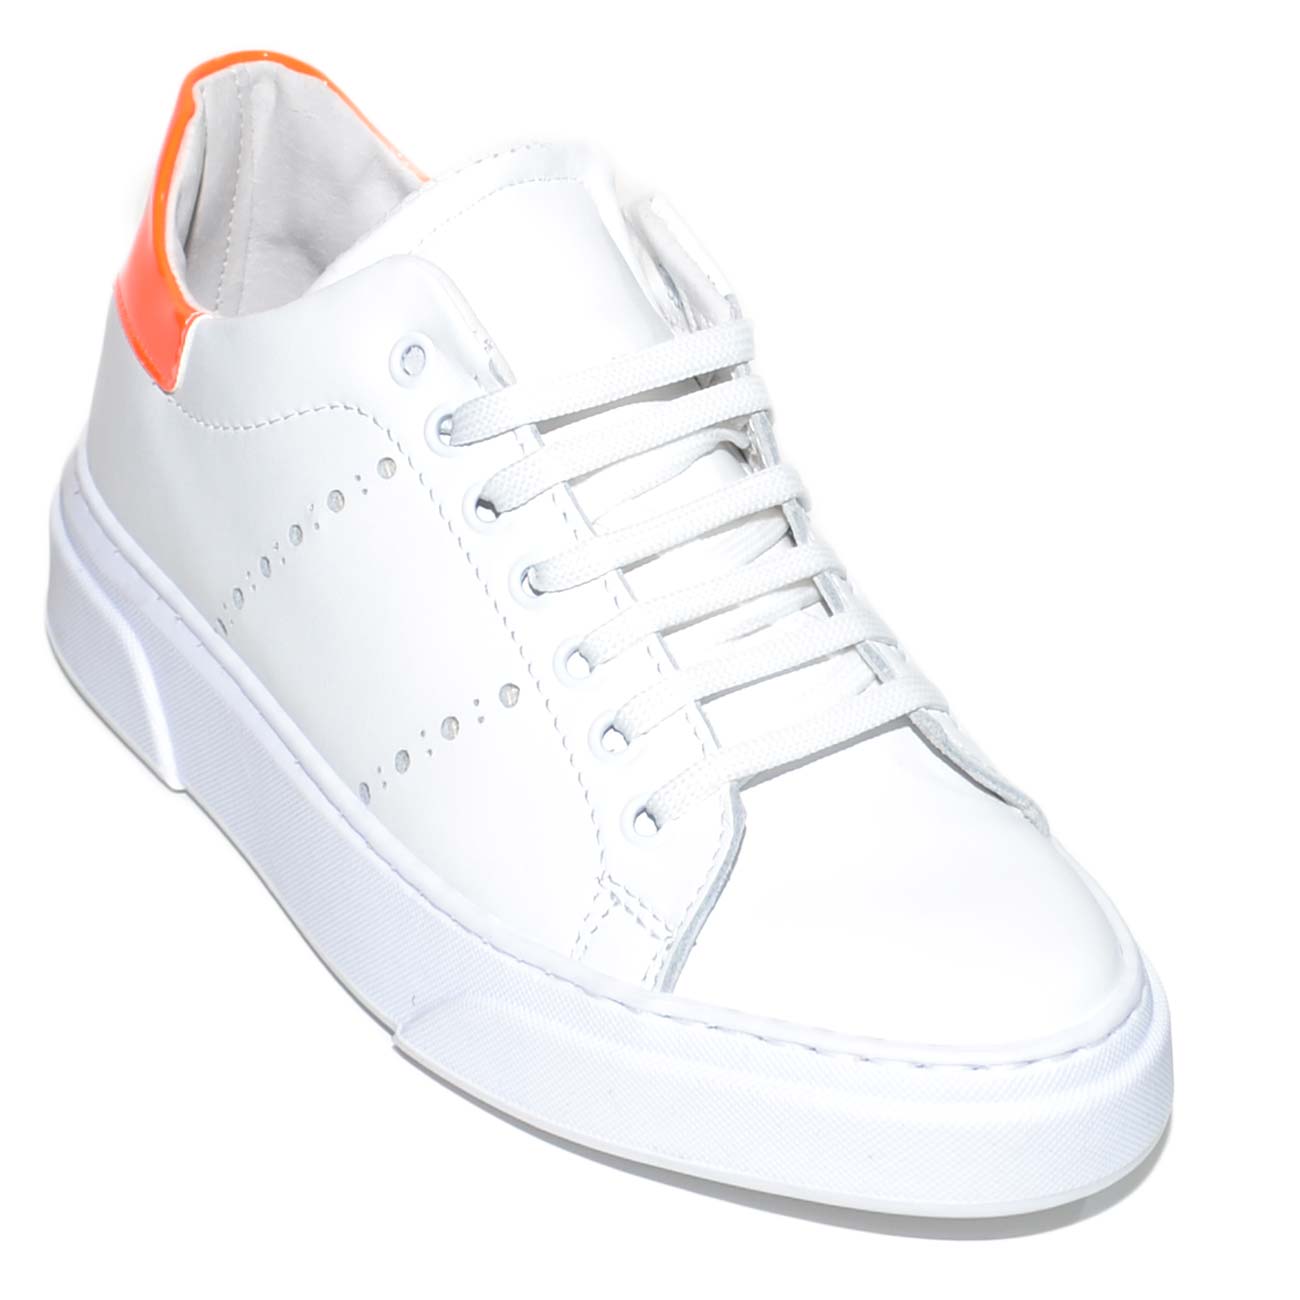 Sneakers bassa uomo bianca in vera pelle basic con fori buchi laterali e riporto arancio fluo gomma under bianca moda